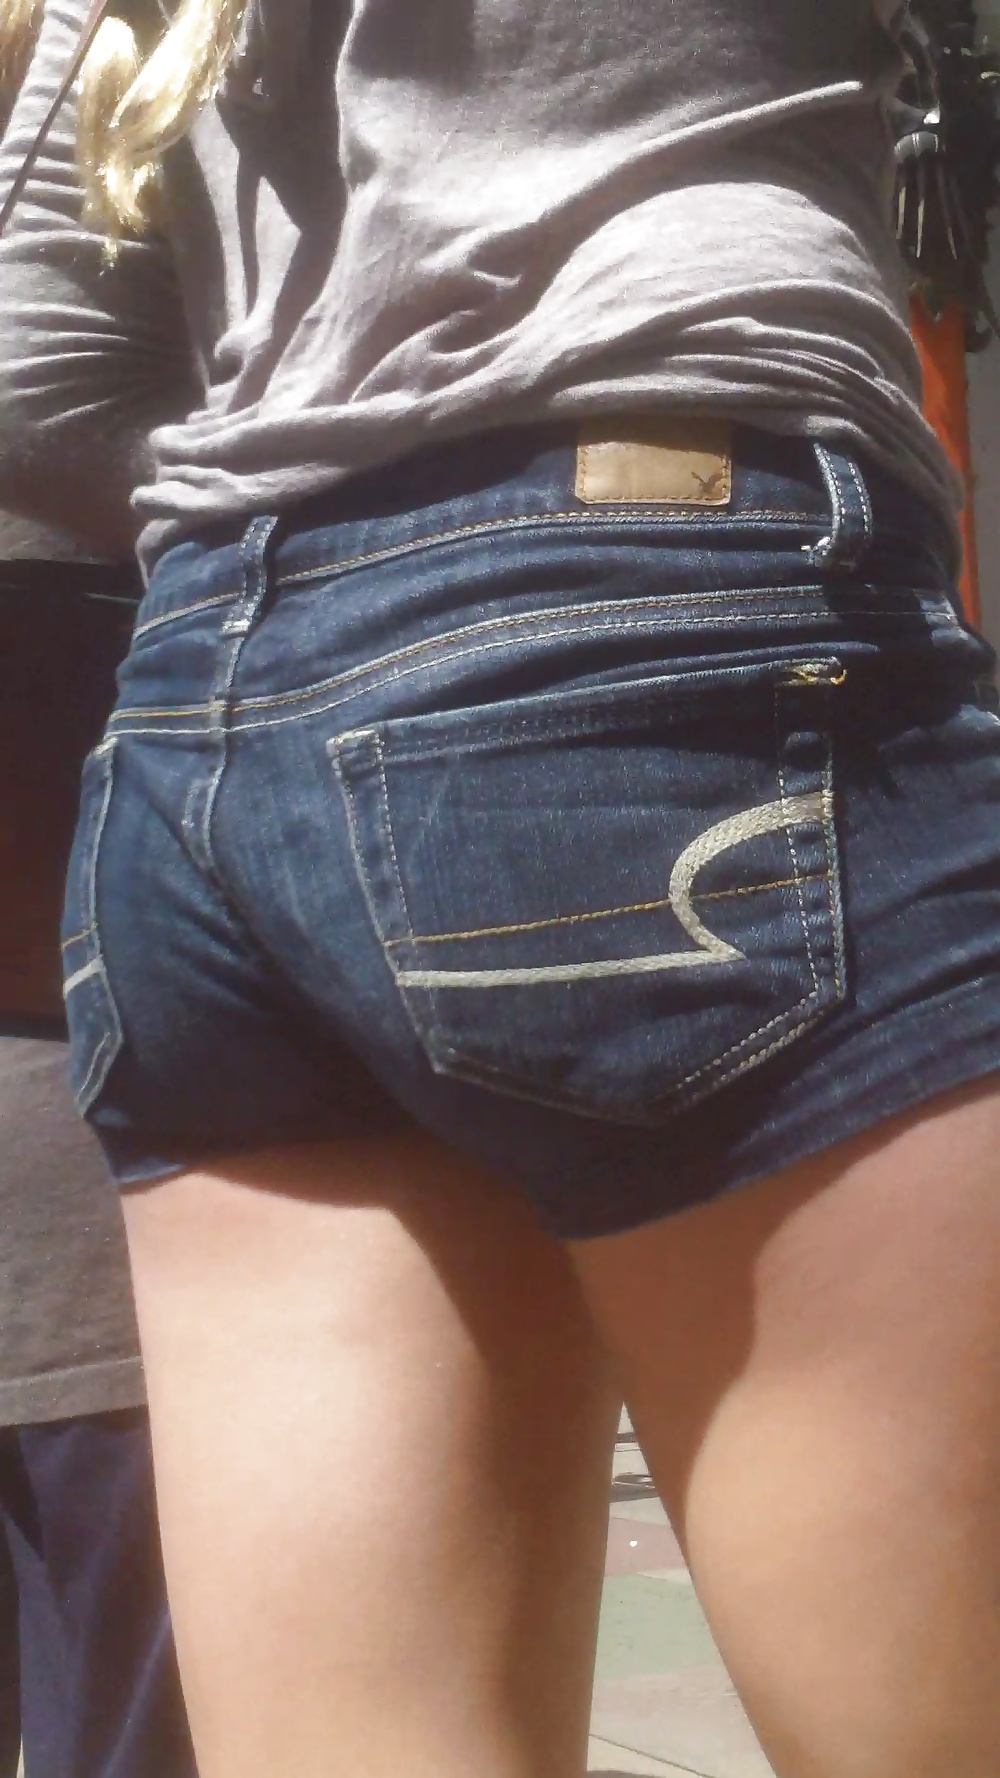 Popular teen girls ass & butt in jeans part 3 #25400568